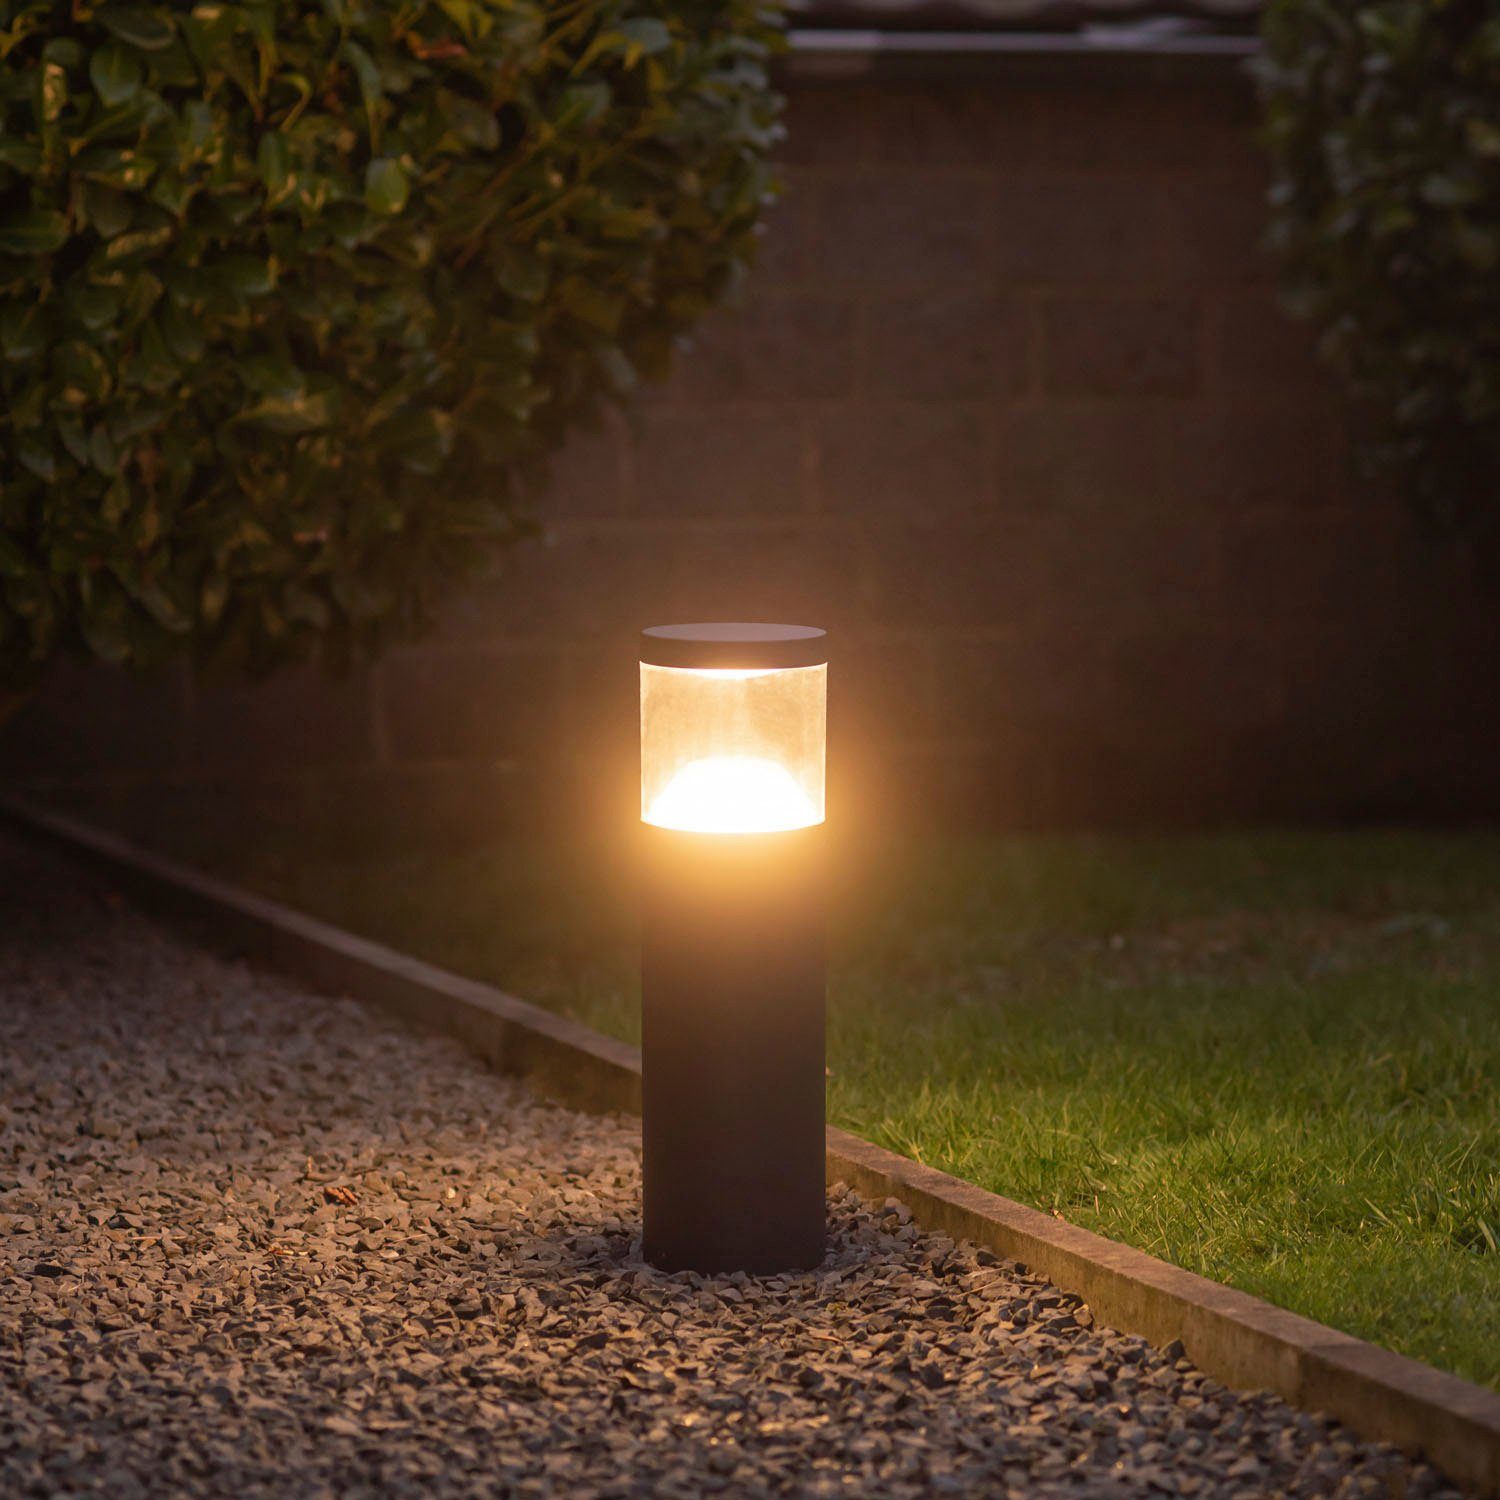 Home Garten Led GIULIA, integriert, Pollerleuchte Wegeleuchten Paco LED Beleuchtung Beleuchtung Warmweiß, 3000K IP54 fest